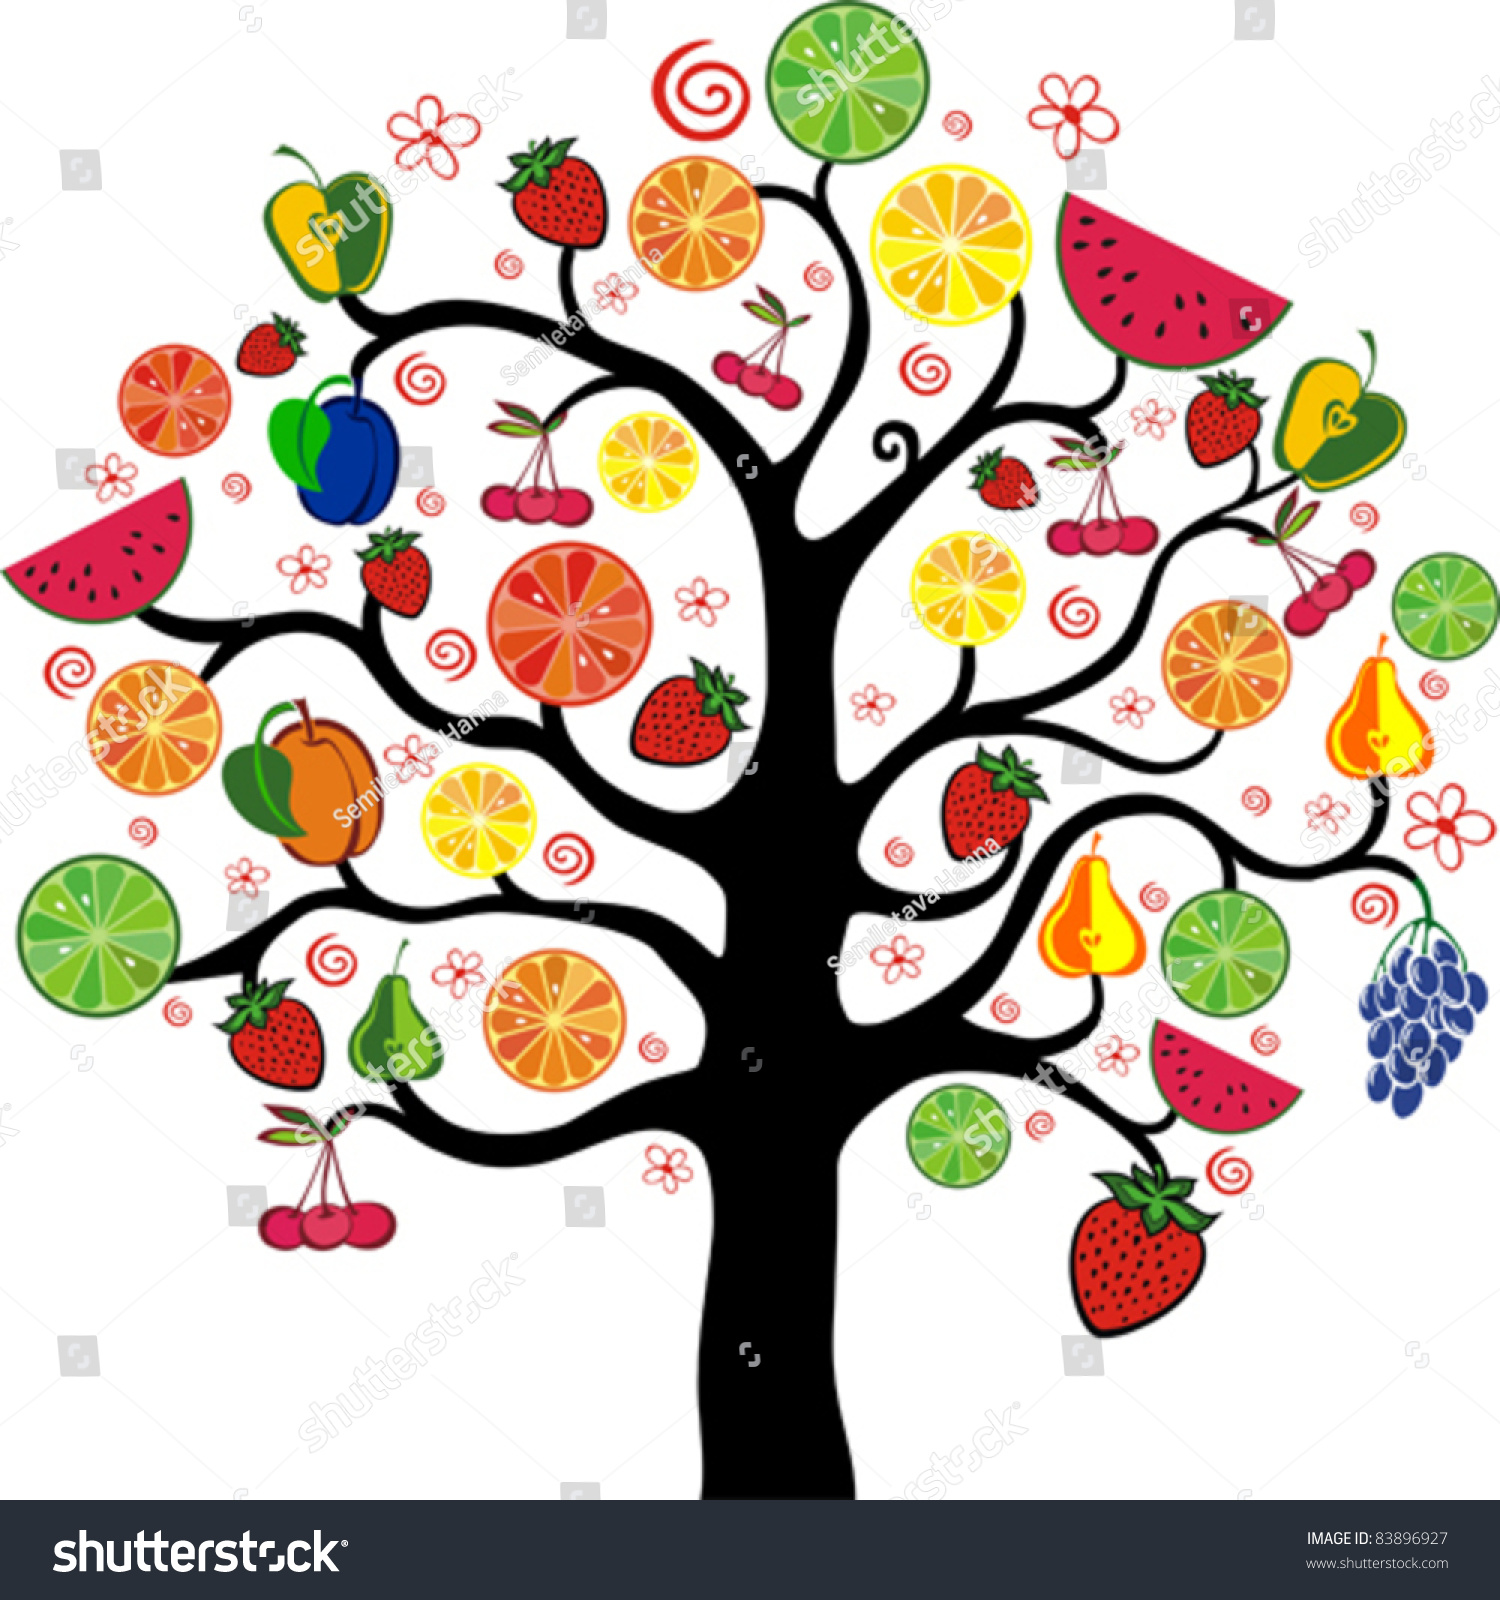 Чудо дерево с разными фруктами